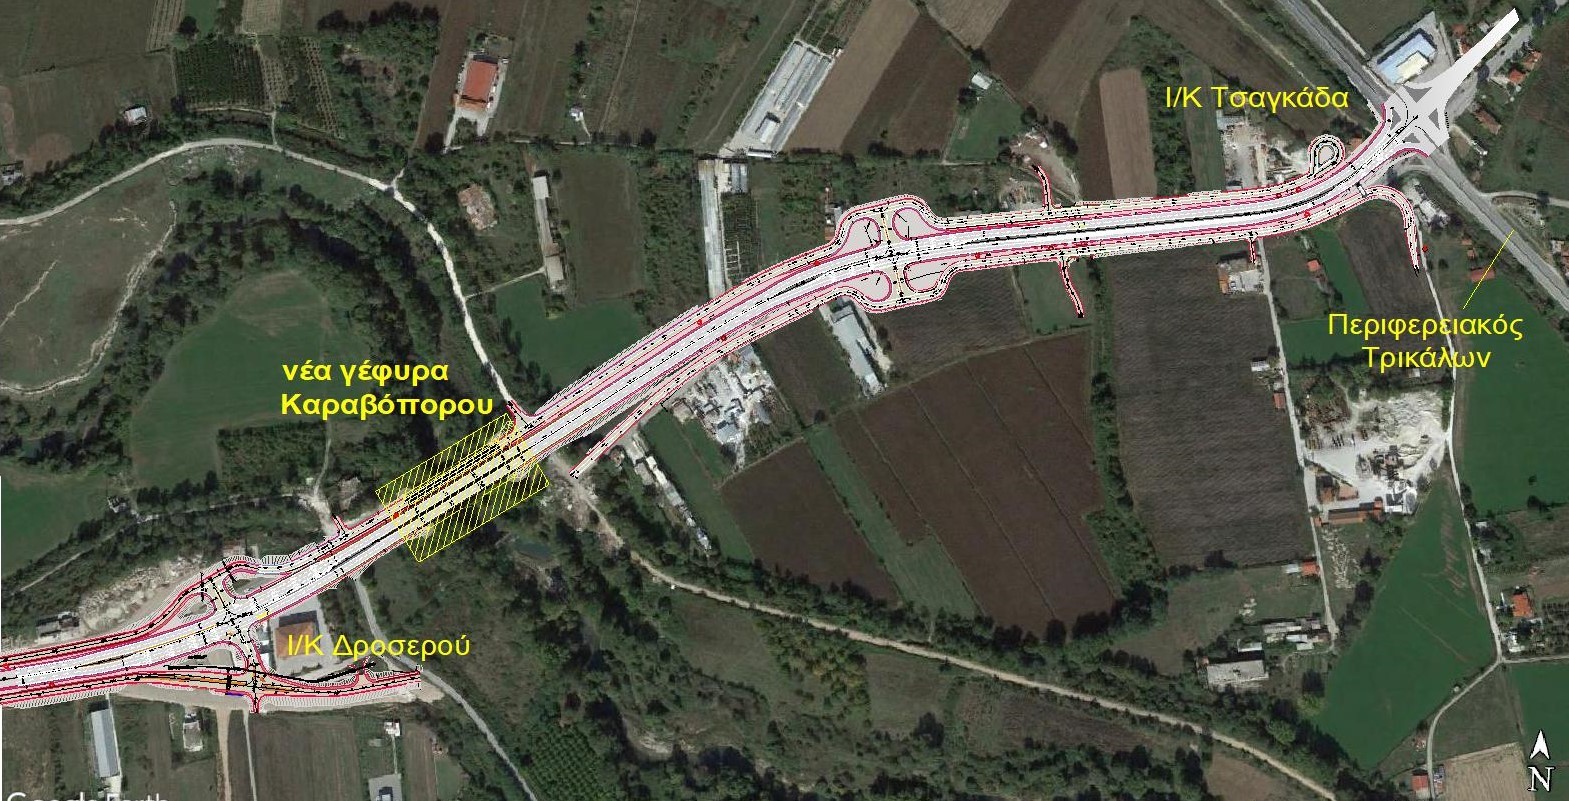 Νέα γέφυρα δύο λωρίδων κυκλοφορίας στον Καραβόπορο